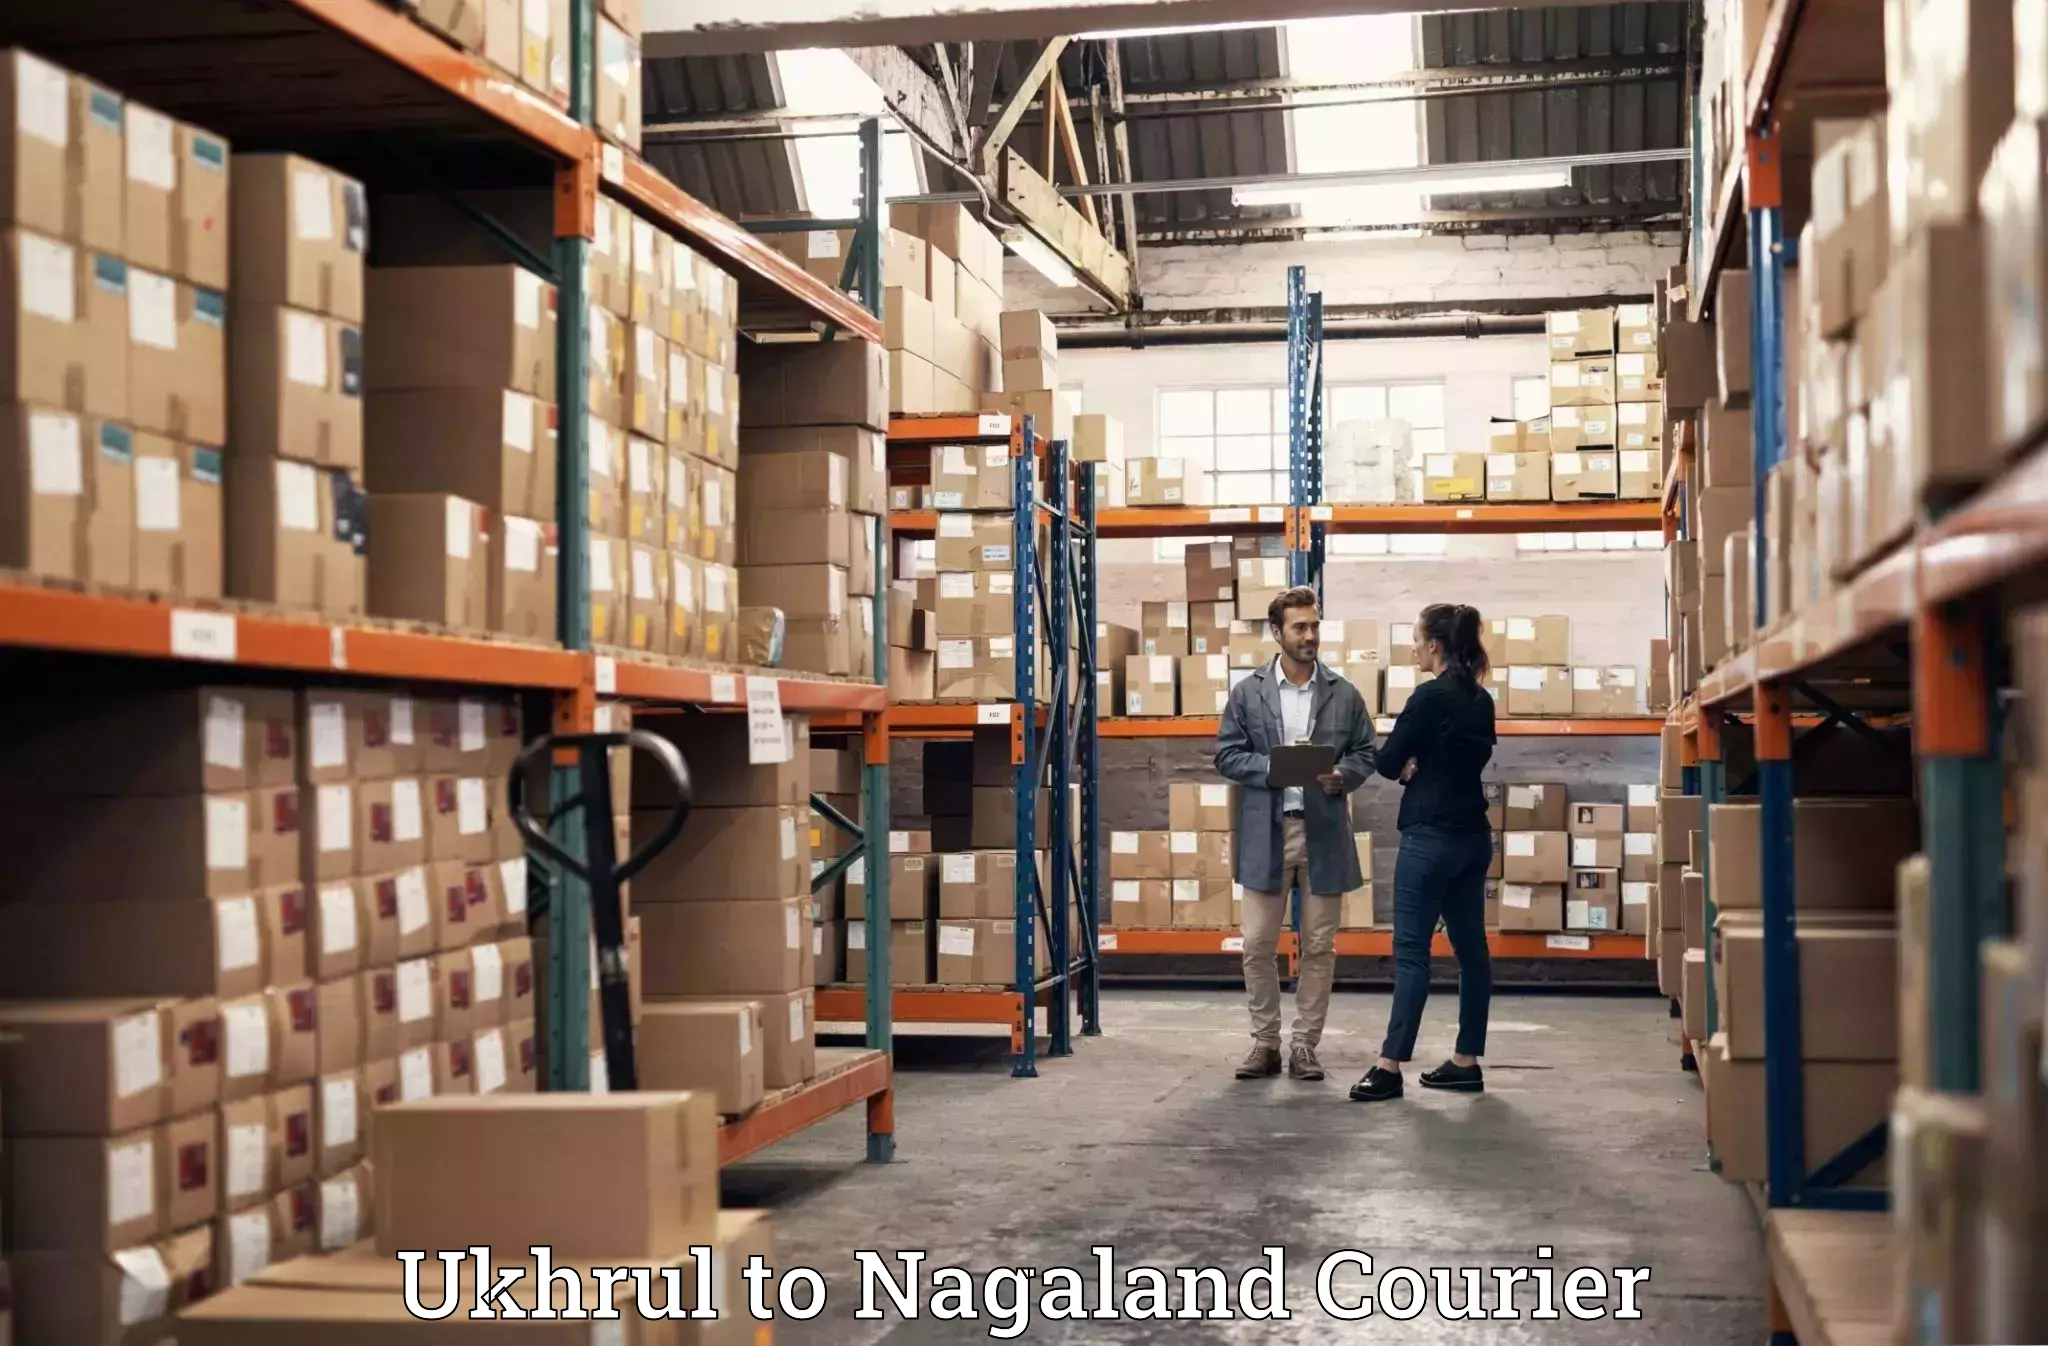 Luggage shipment specialists Ukhrul to NIT Nagaland